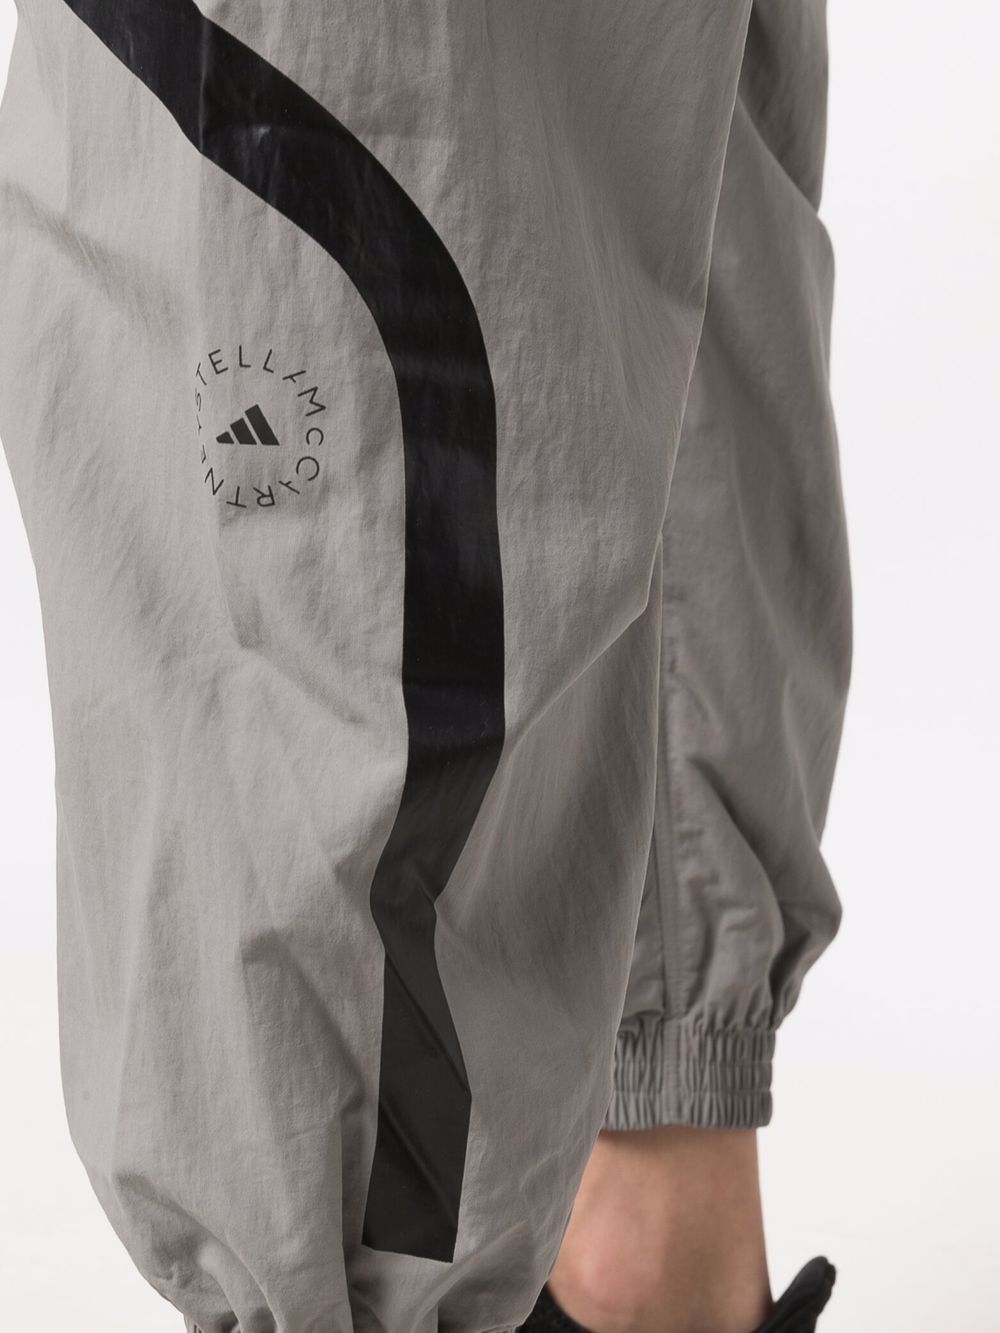 фото Adidas by stella mccartney спортивные брюки с принтом